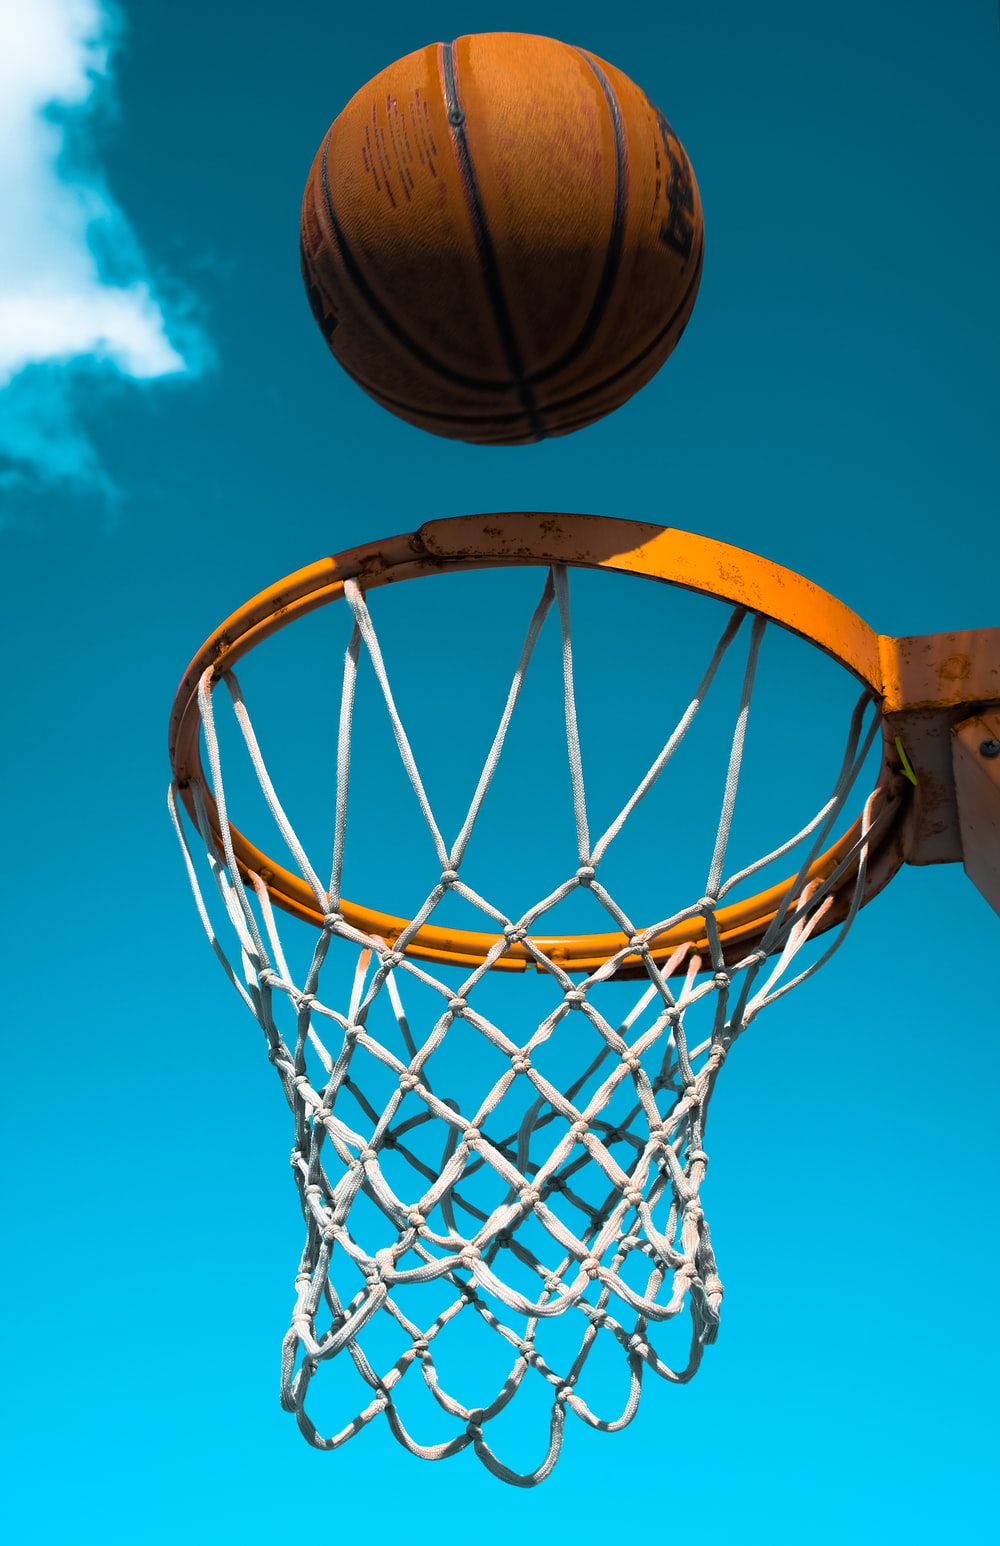 Pictures Of Basket Ball - KibrisPDR